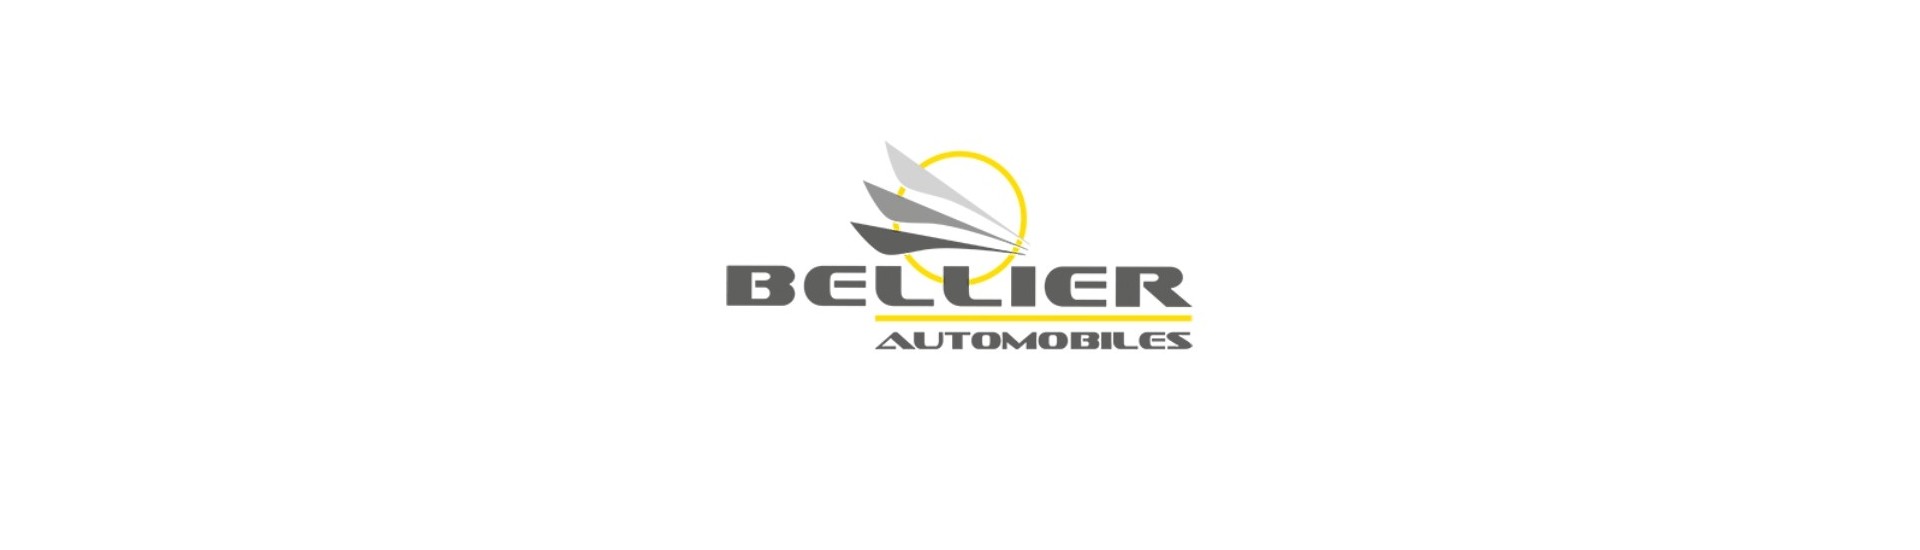 Acceleratorkabel till bästa pris för bil utan tillstånd Bellier